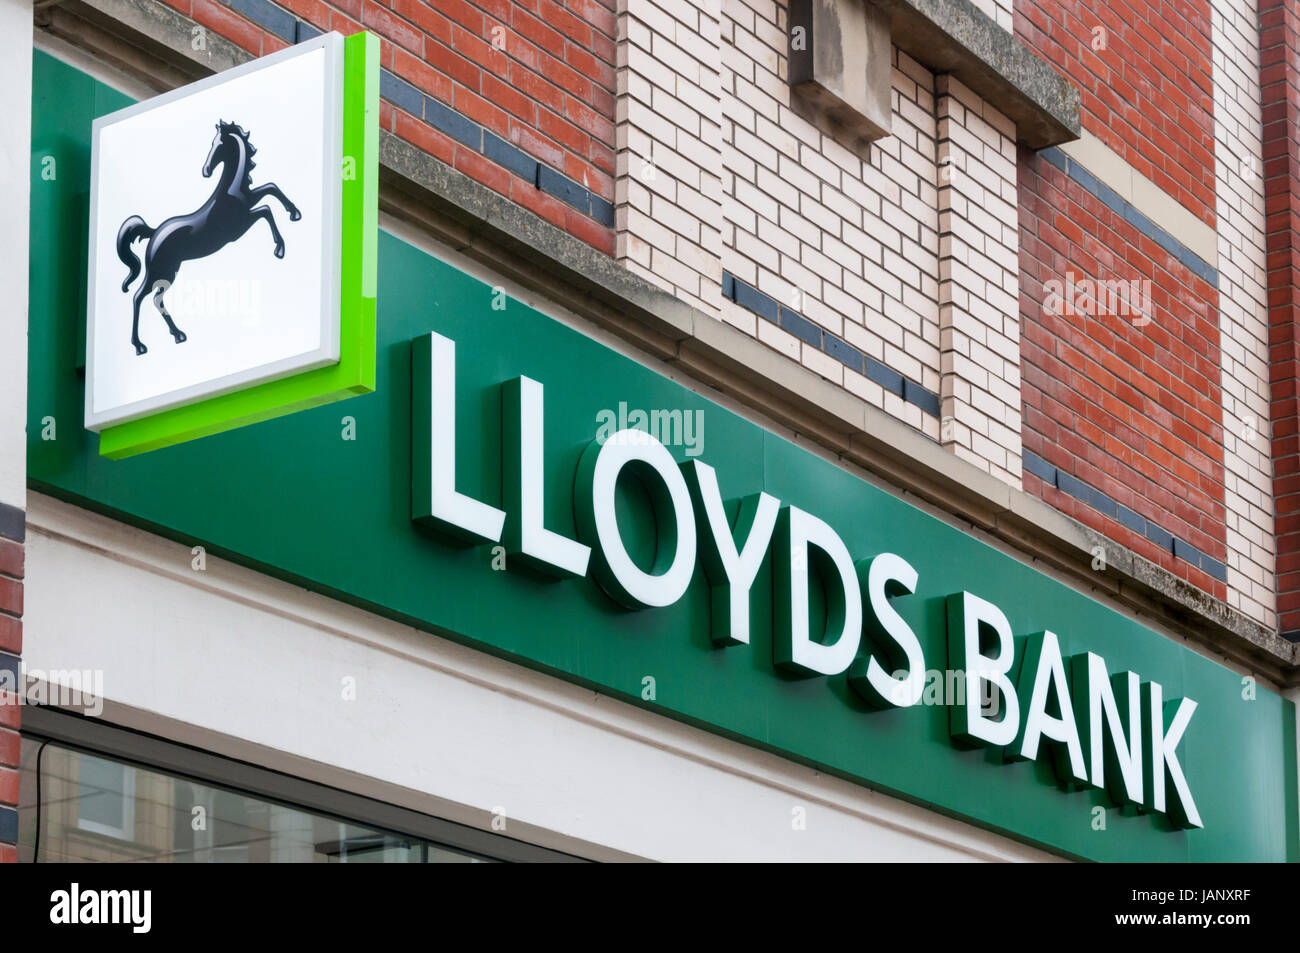 Lloyds Bank Black Horse Zeichen und Namen über eine Filiale der Bank in Großbritannien. Stockfoto